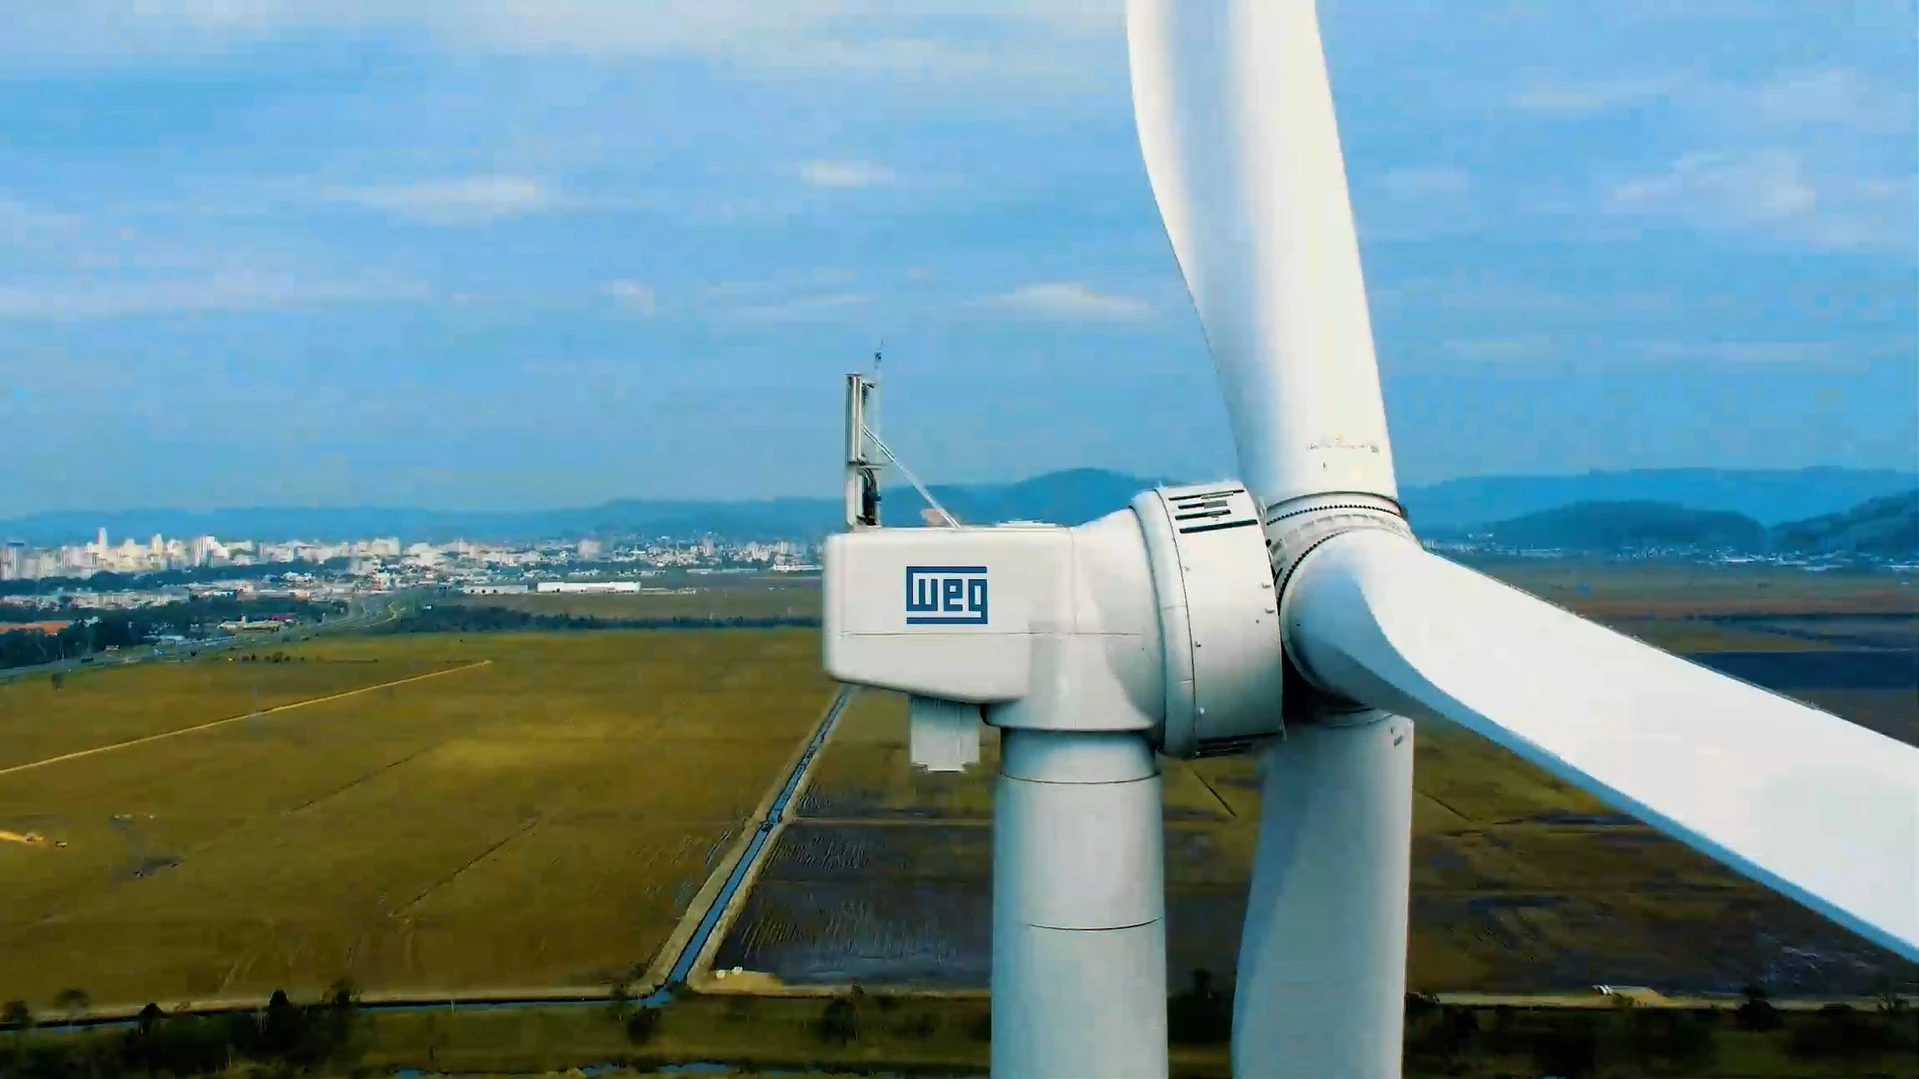 BNDES financia novo aerogerador da WEG. Na imagem: Parte de cima de aerogerador gigantesco da WEG com logomarca da empresa na lateral do compartimento da turbina (Foto: Divulgação)